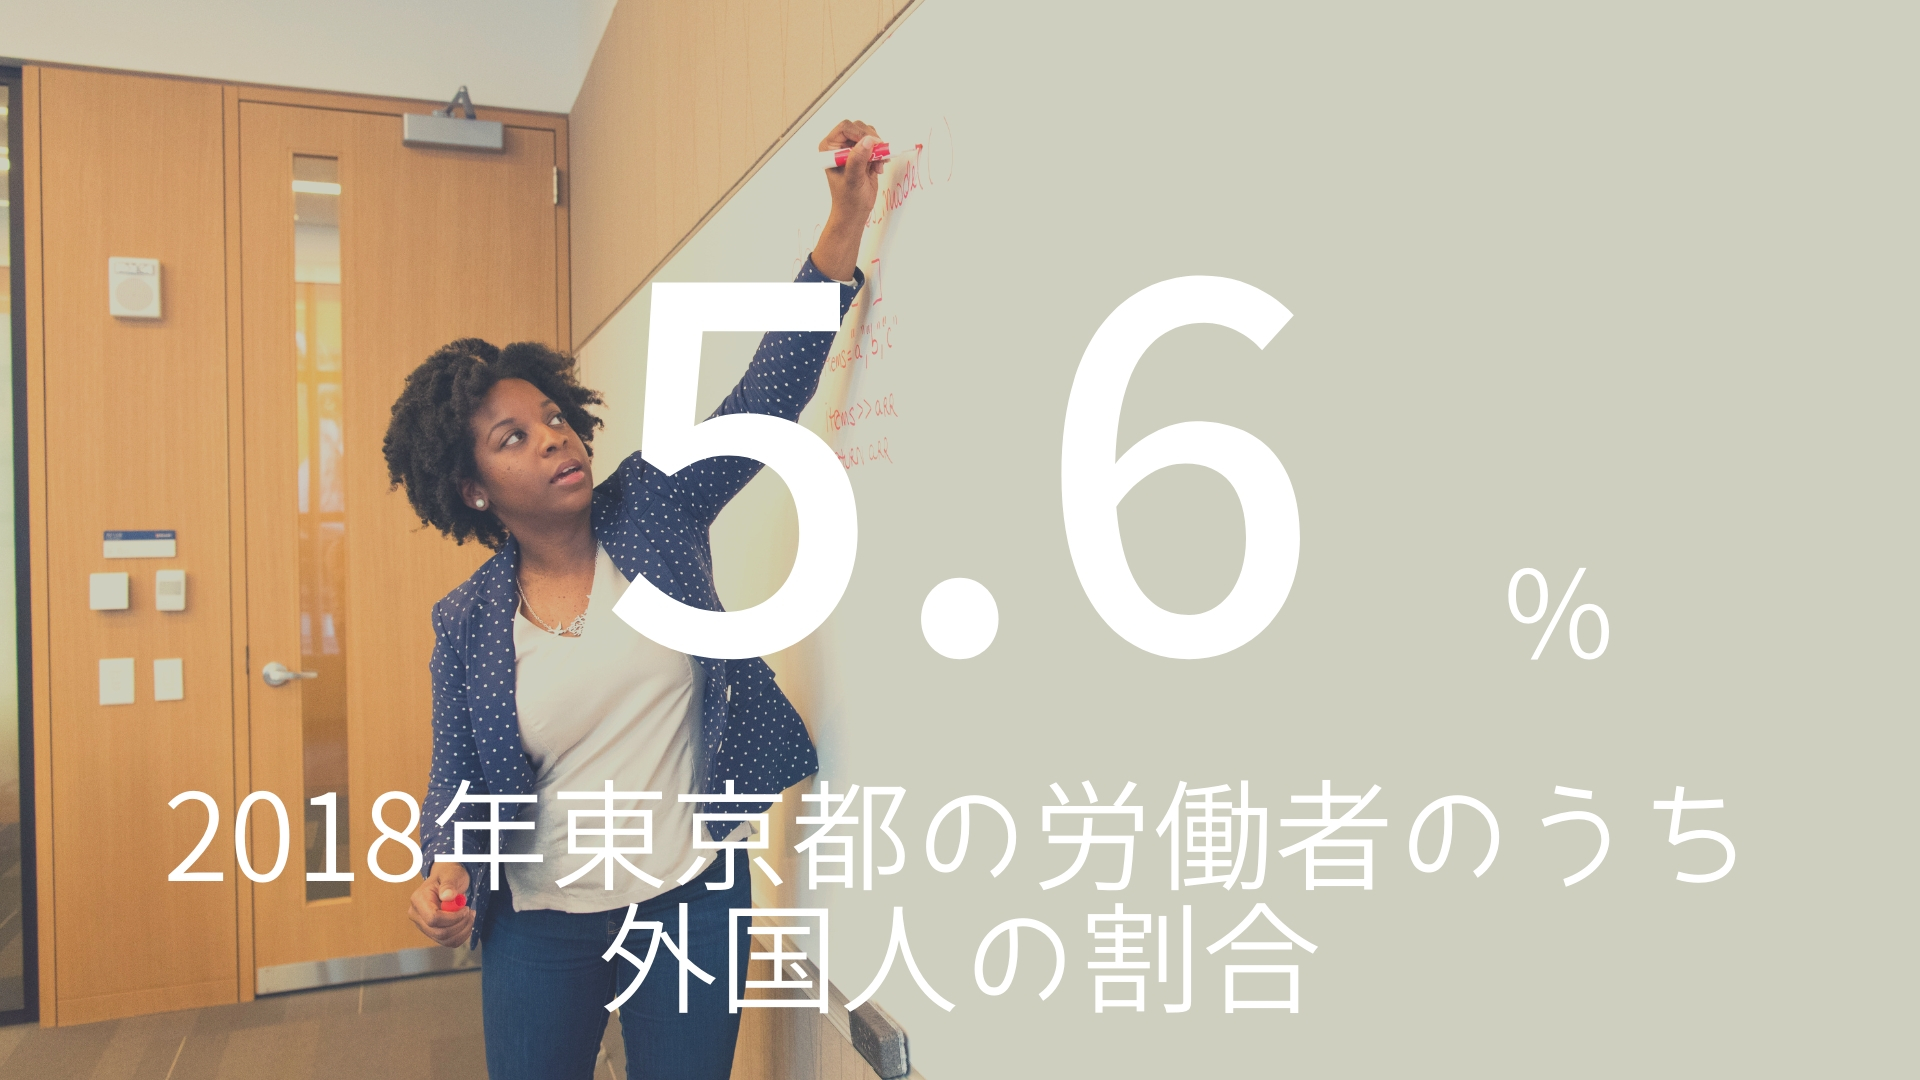 「5.6%」 >>> 2018年東京都の労働者のうち外国人の割合。